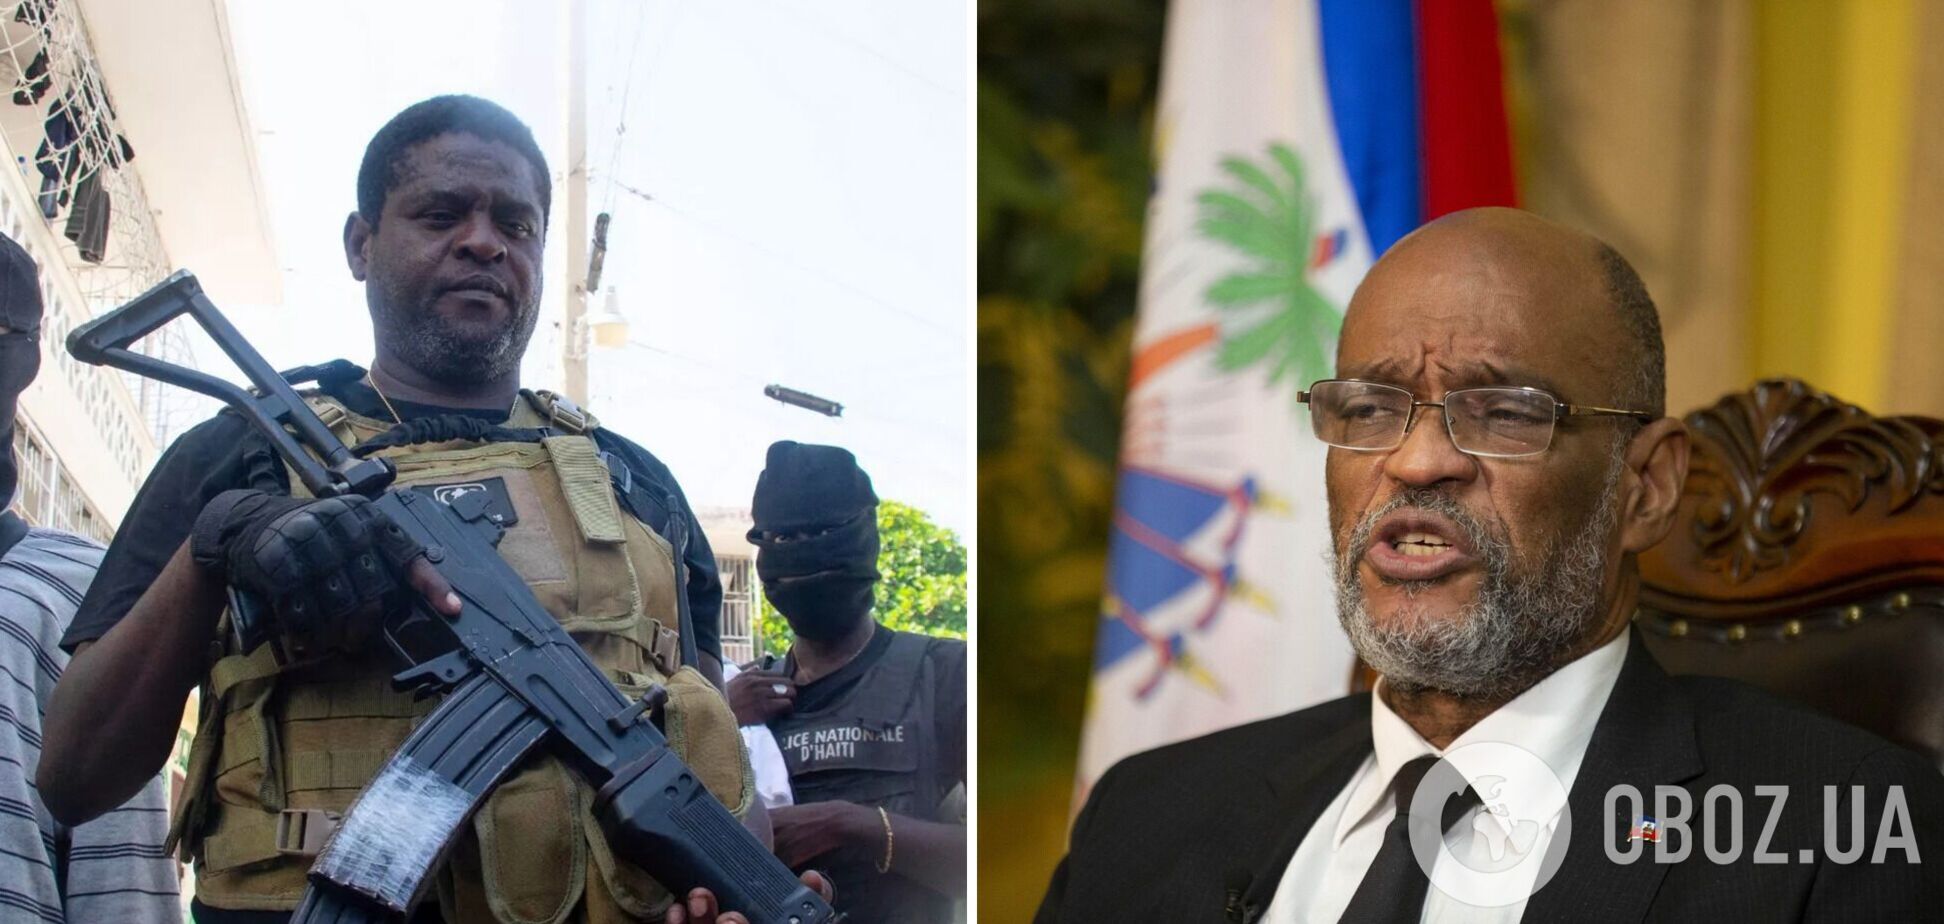 Лидер бандитов Гаити пригрозил 'гражданской войной', если премьер не уйдет в отставку